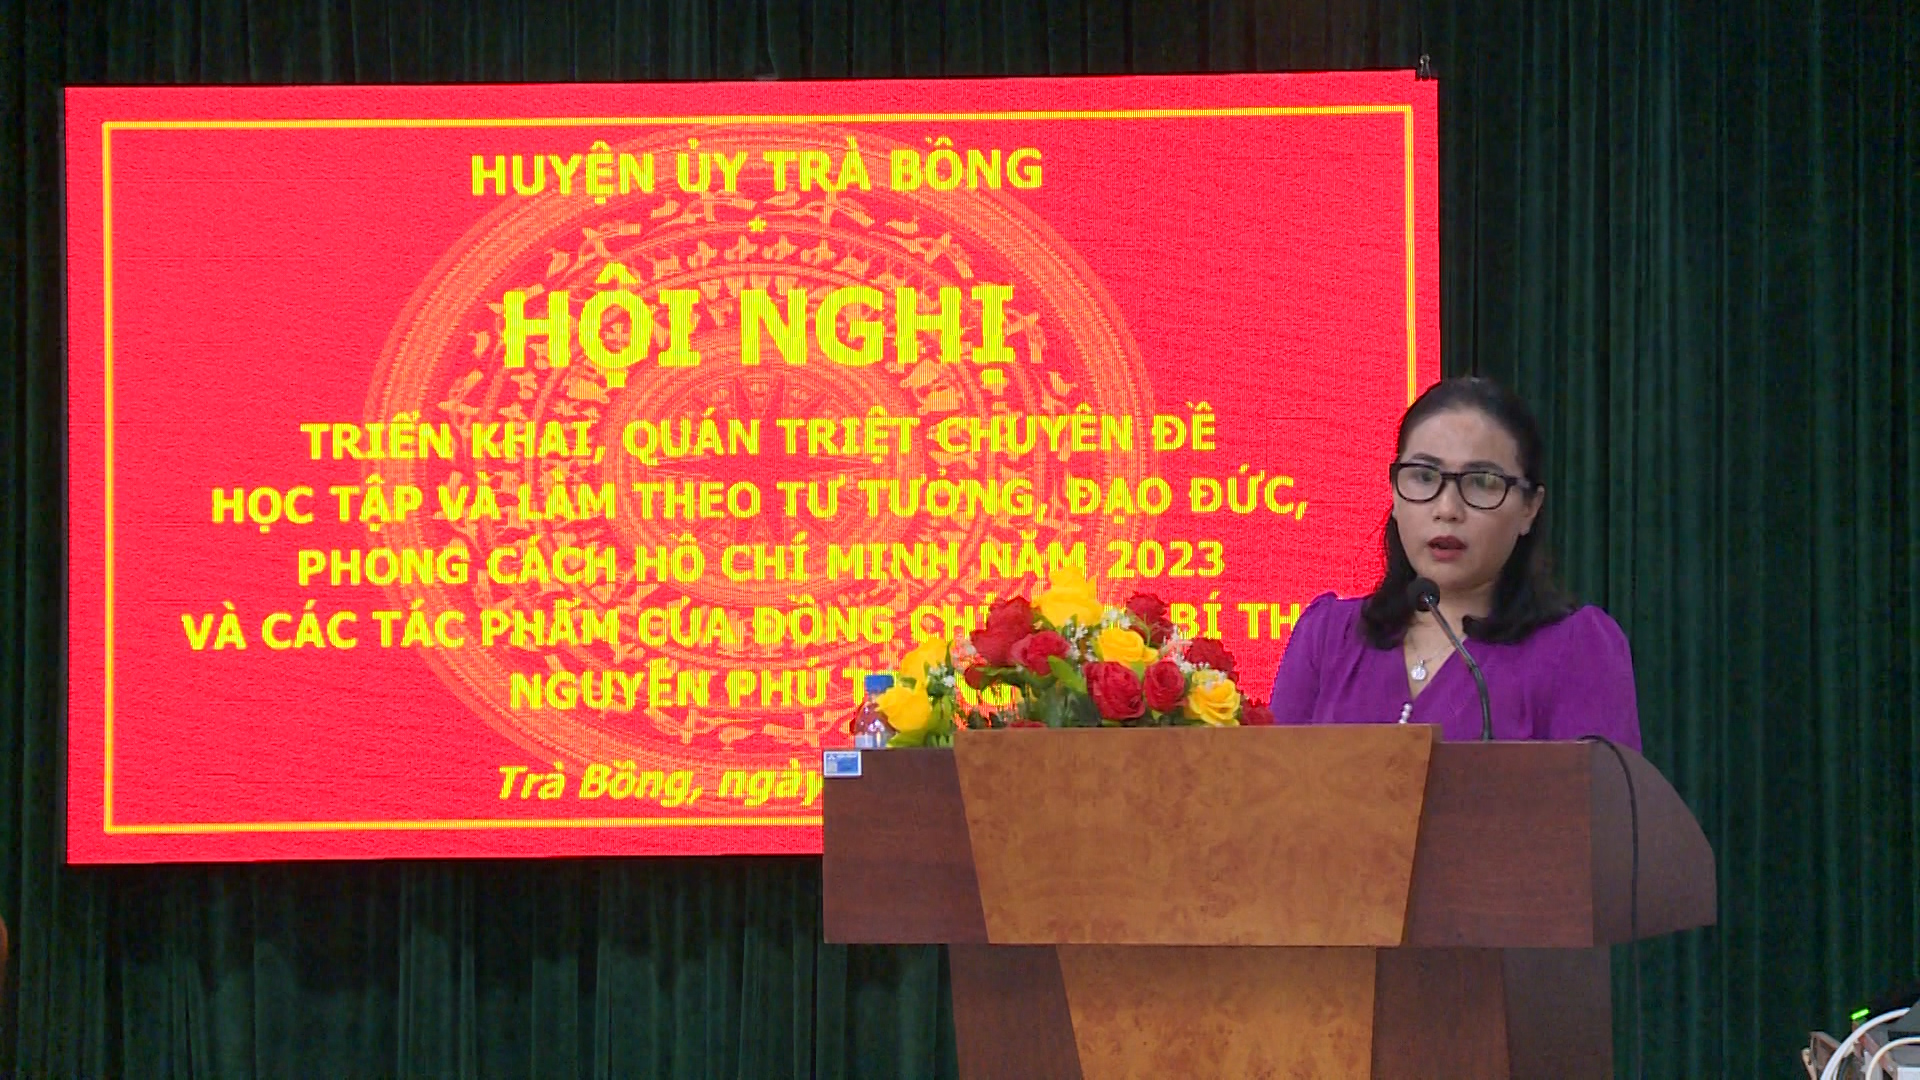 Huyện ủy Trà Bồng triển khai, quán triệt chuyên đề học tập và làm theo tư tưởng, đạo đức, phong cách Hồ Chí Minh và các tác phẩm của đồng chí Tổng Bí thư Nguyễn Phú Trọng.